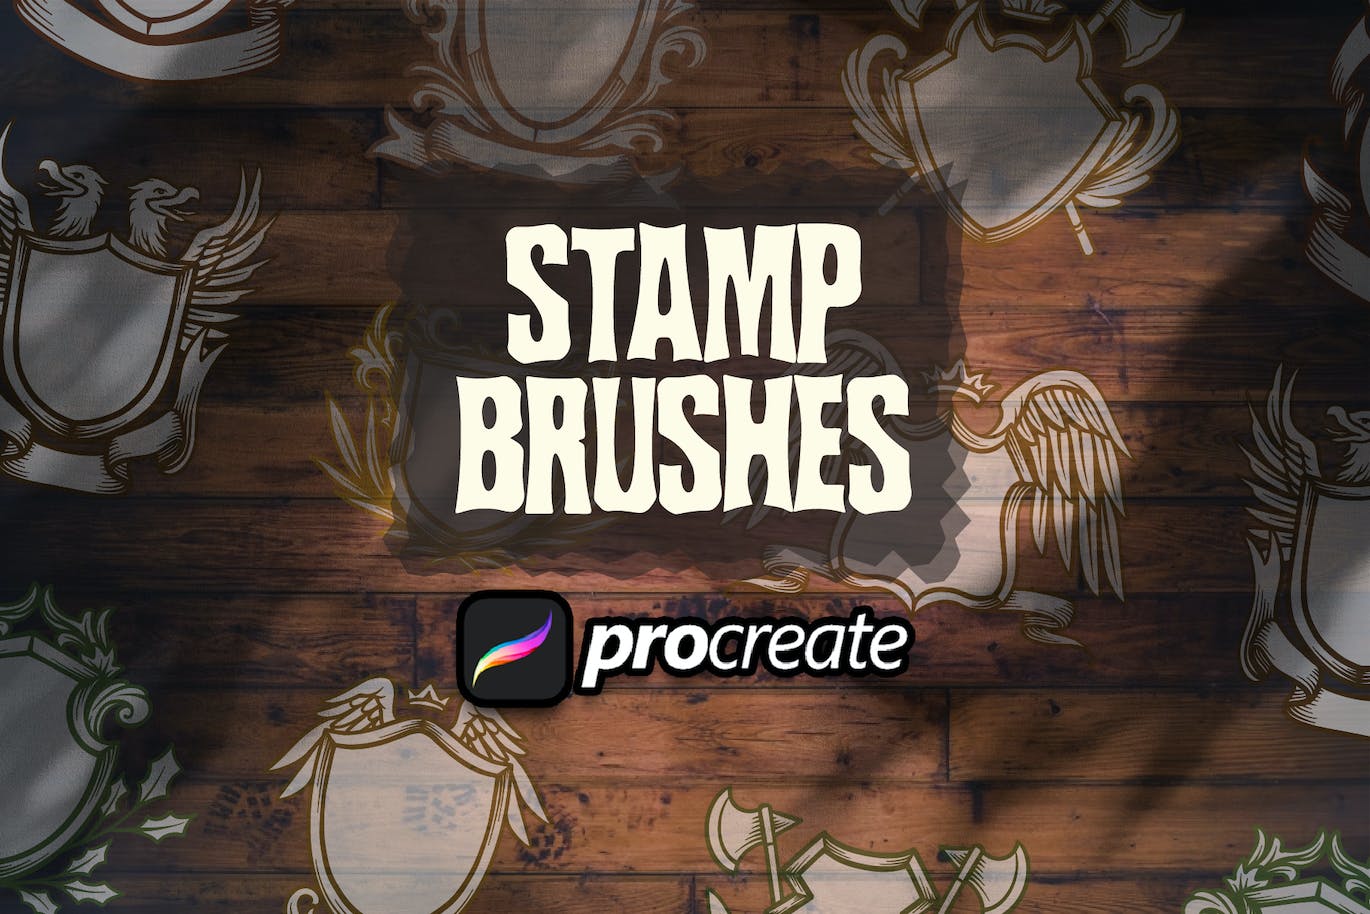 中世纪盾牌Procreate印章绘画笔刷素材 Medieval Shield Heraldic Stamp Brush Procreate 笔刷资源 第1张